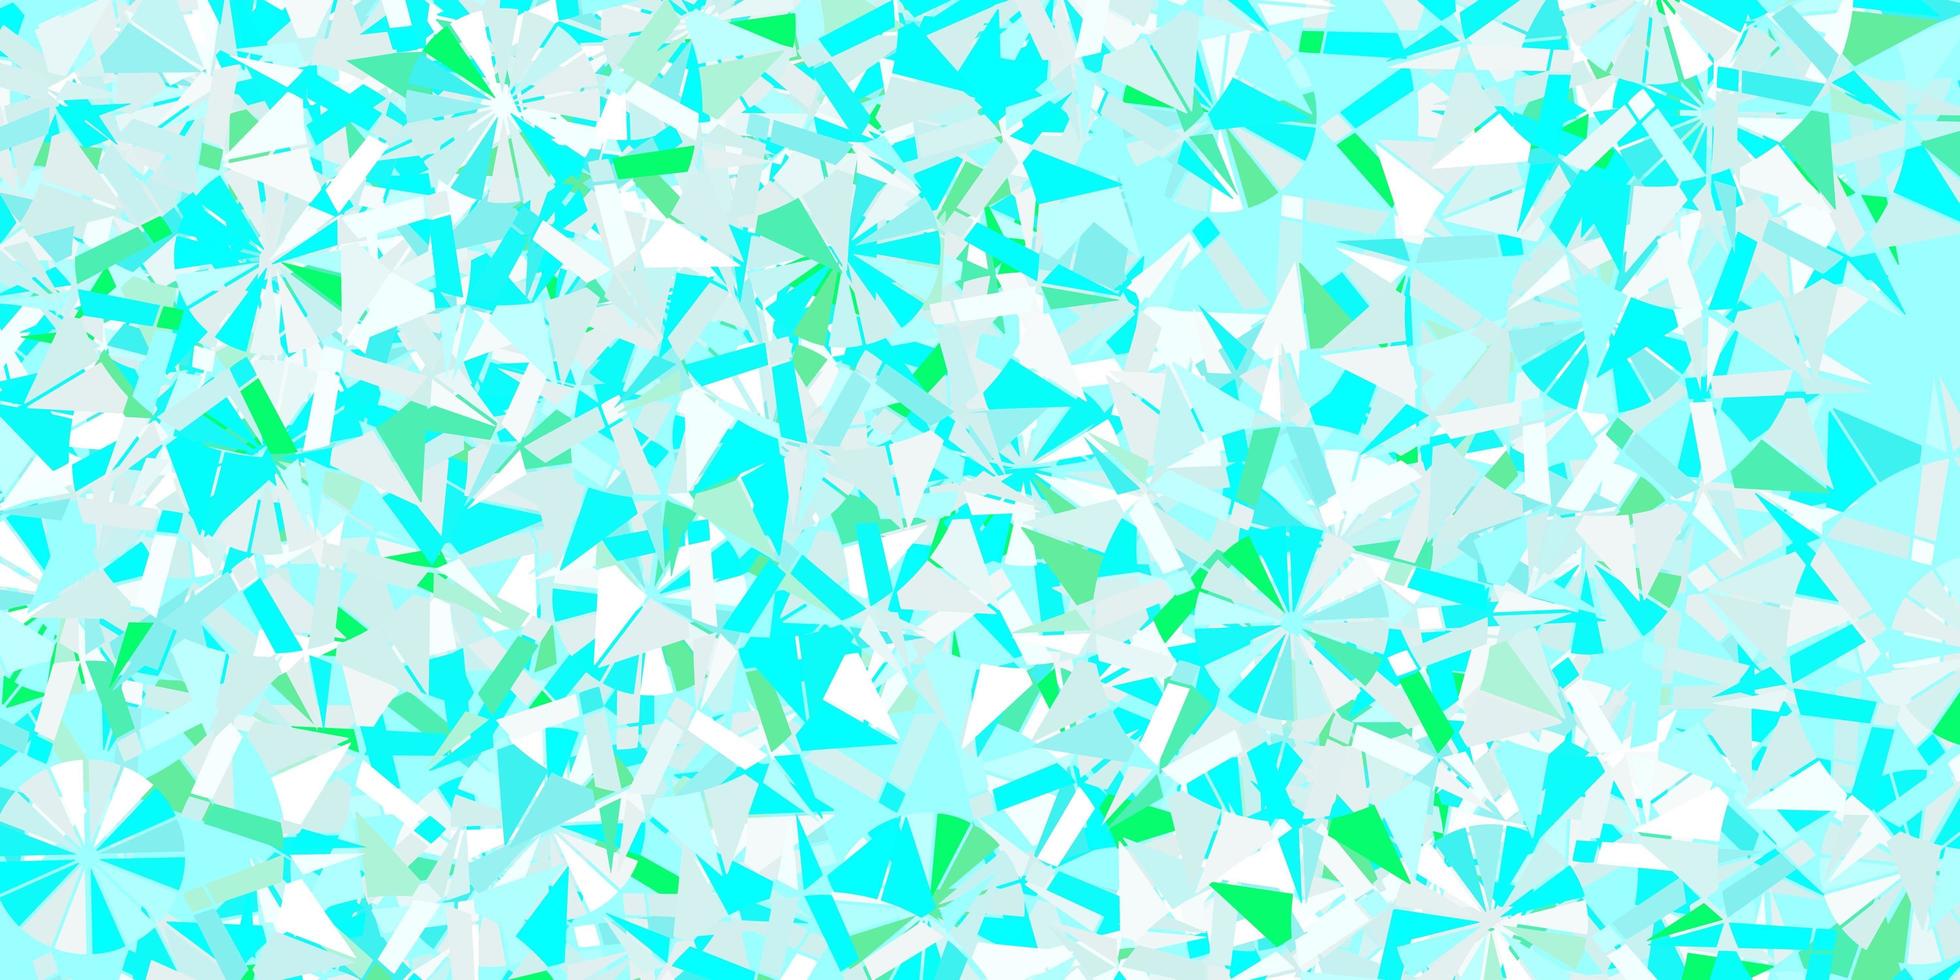 ljusblå, grön vektorlayout med vackra snöflingor. vektor